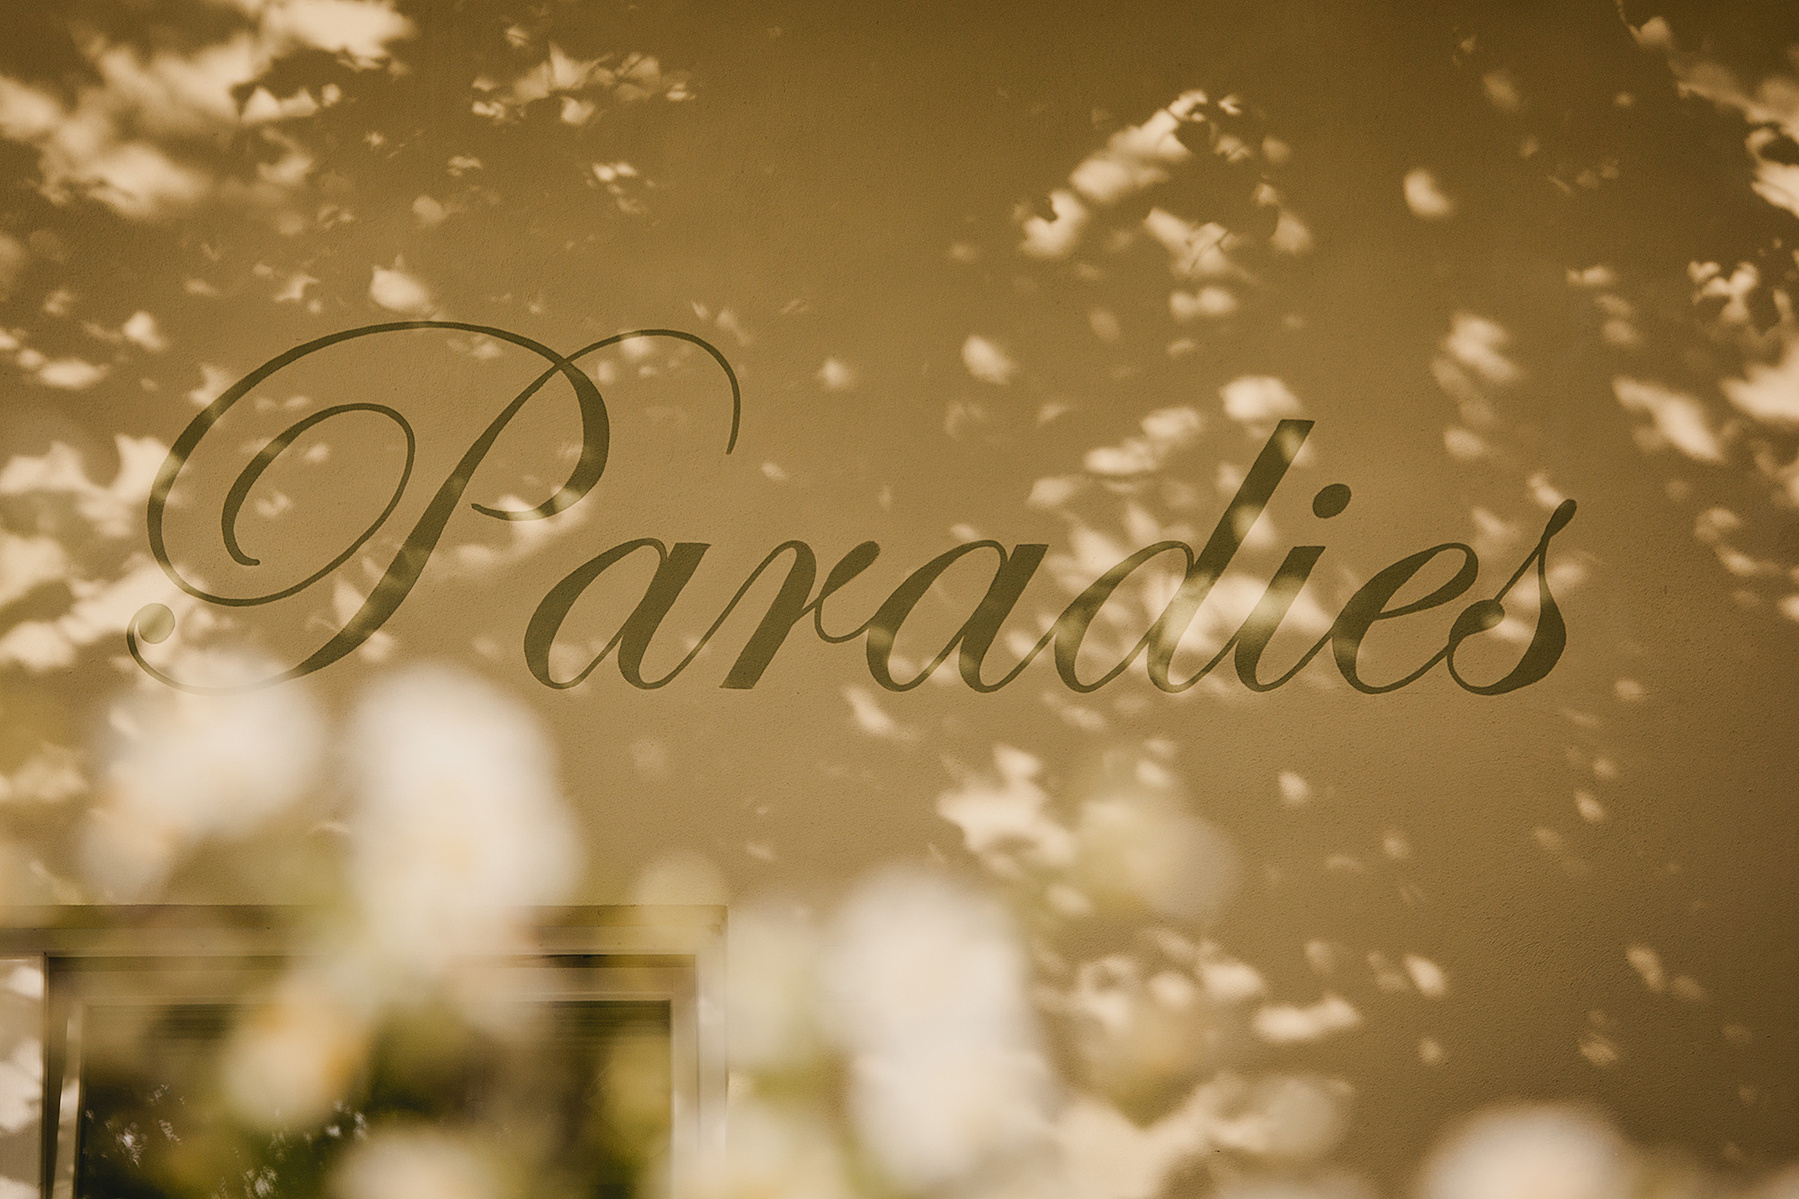 Auf der Fassade eines Blumenladens in Berlin Friedrichshagen ist das Wort "Paradies" abgebildet.